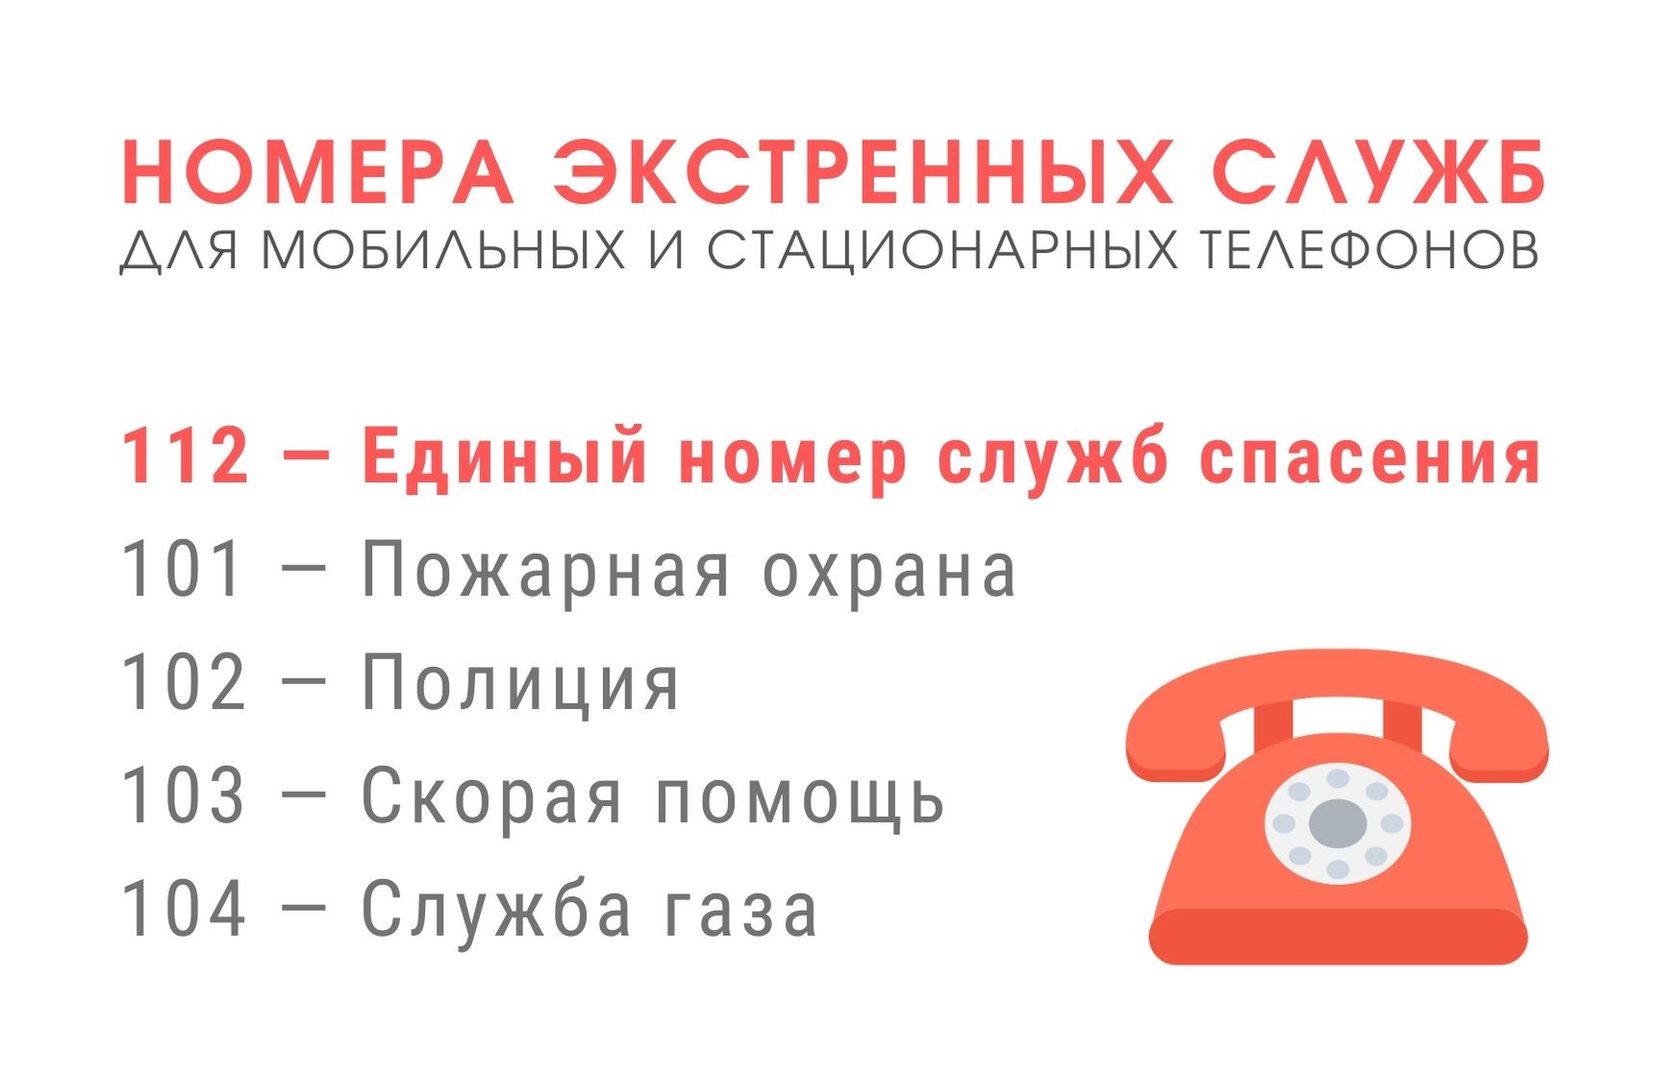 Аварийные службы новосибирска телефоны